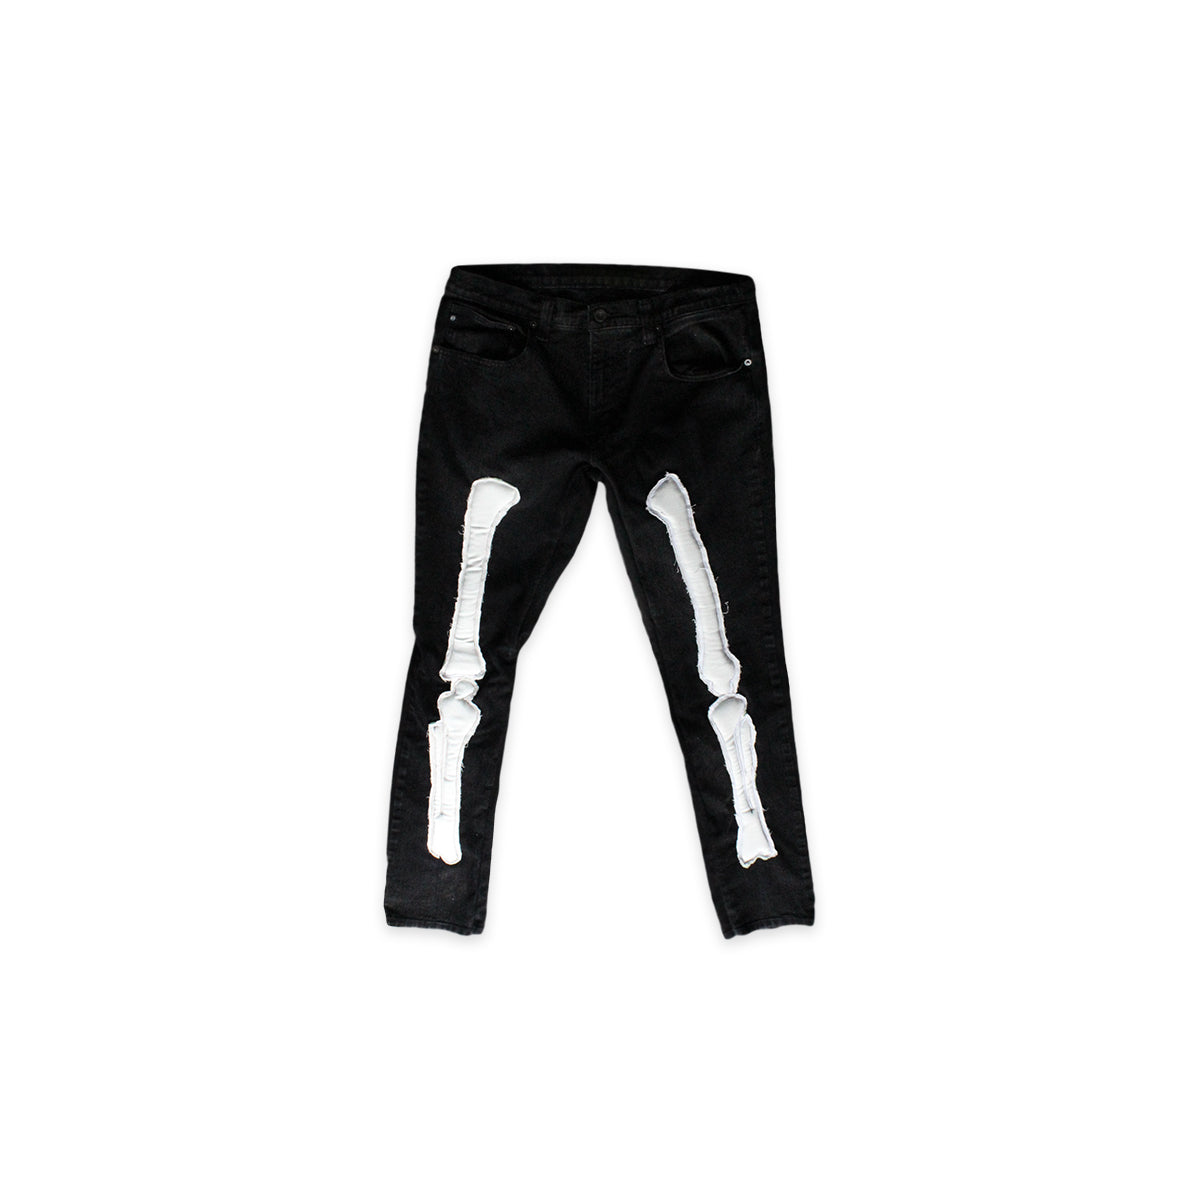 XXIII Skeleton Pants Black/White